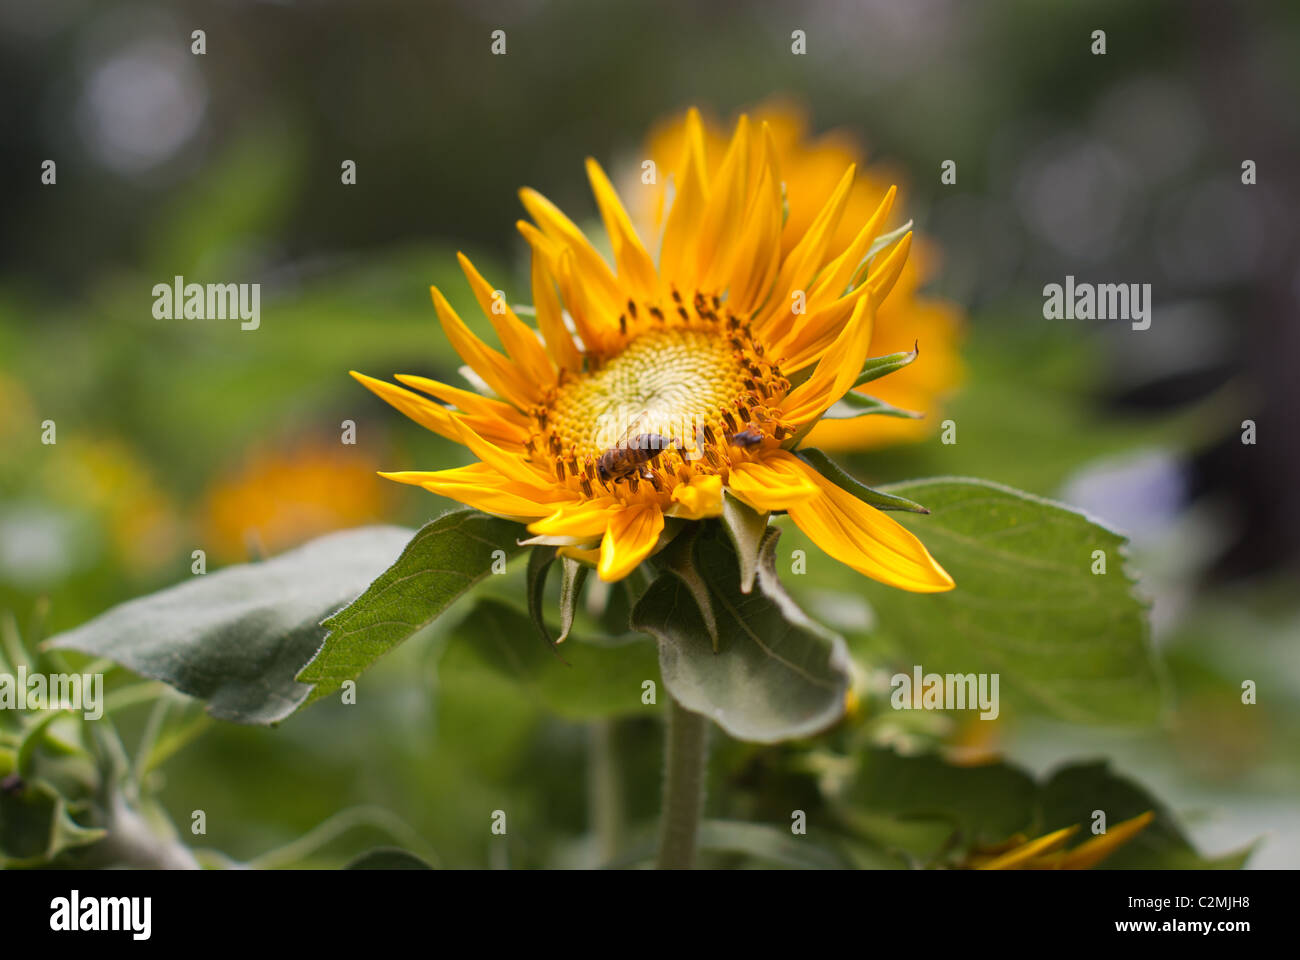 sunflower bee close up yellow Stock Photo